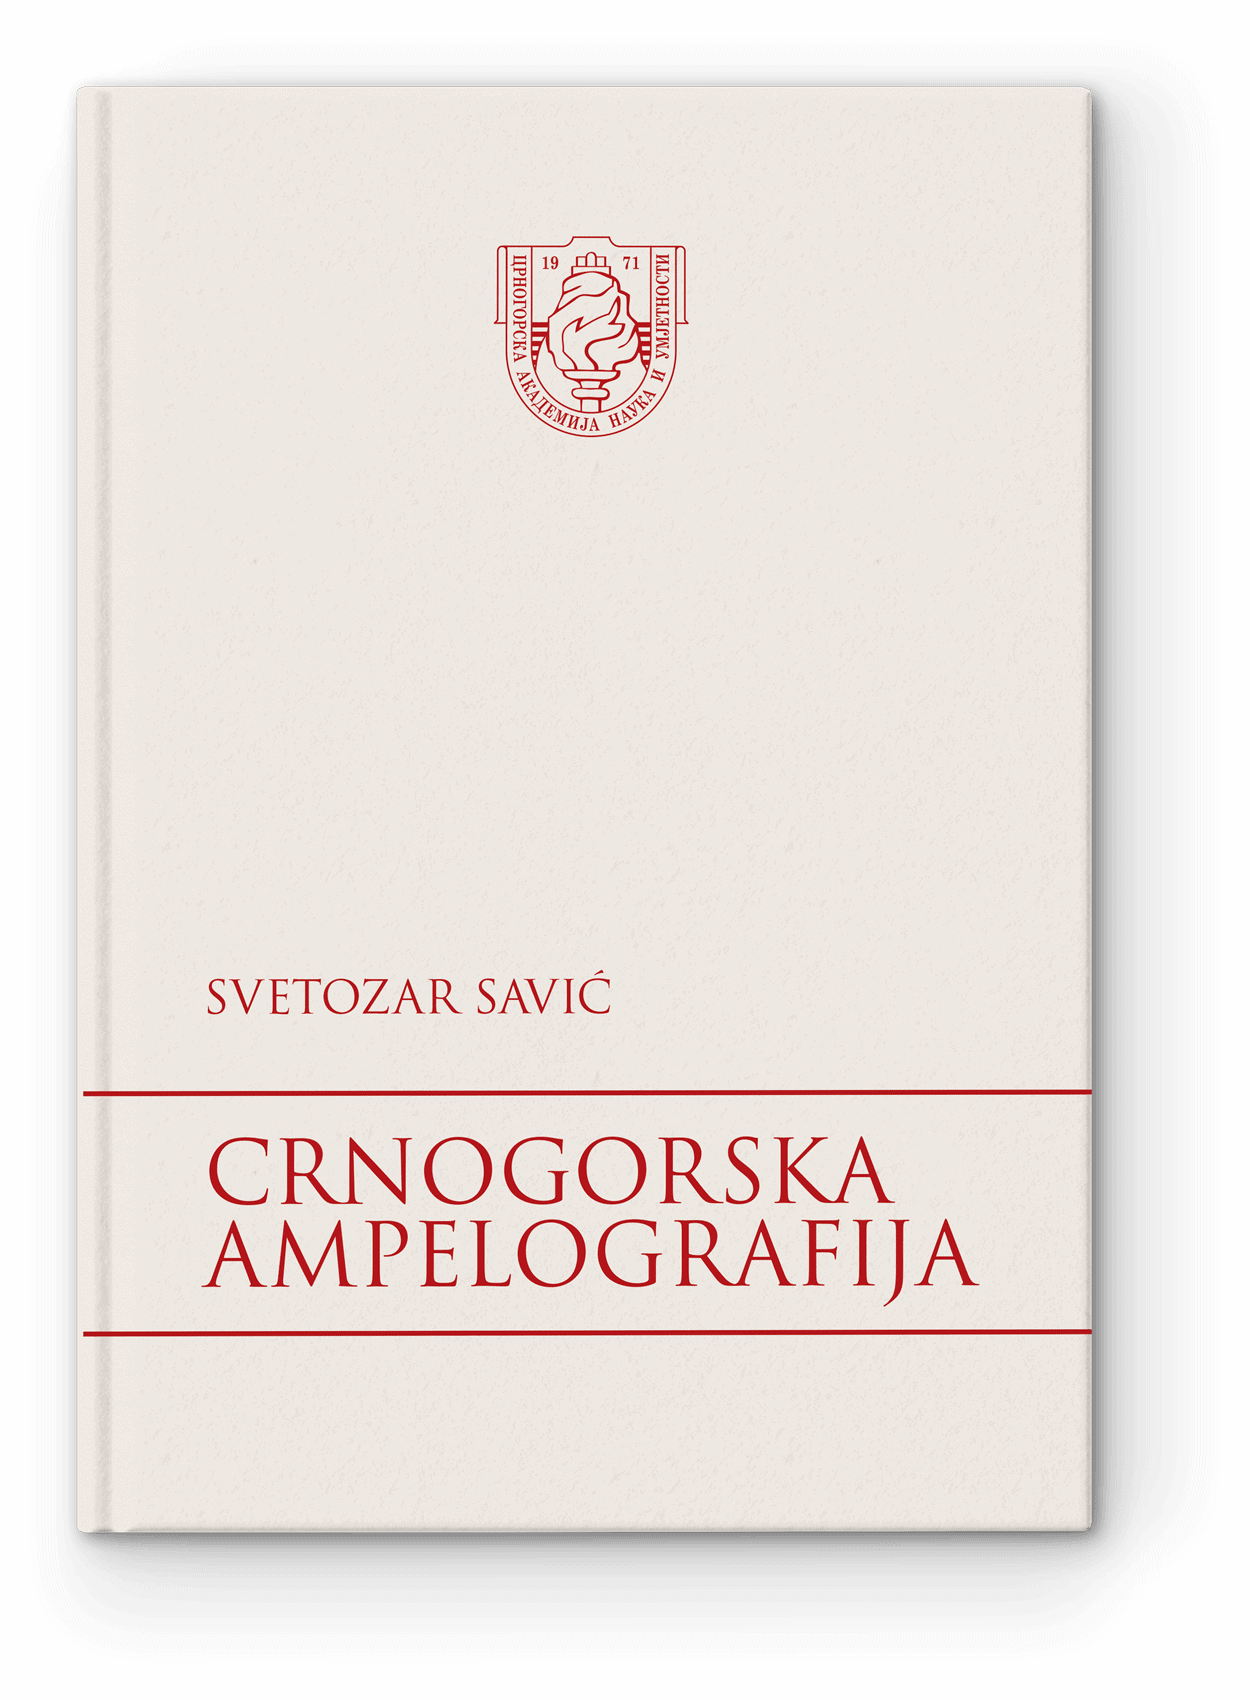 Crnogorska ampelografija